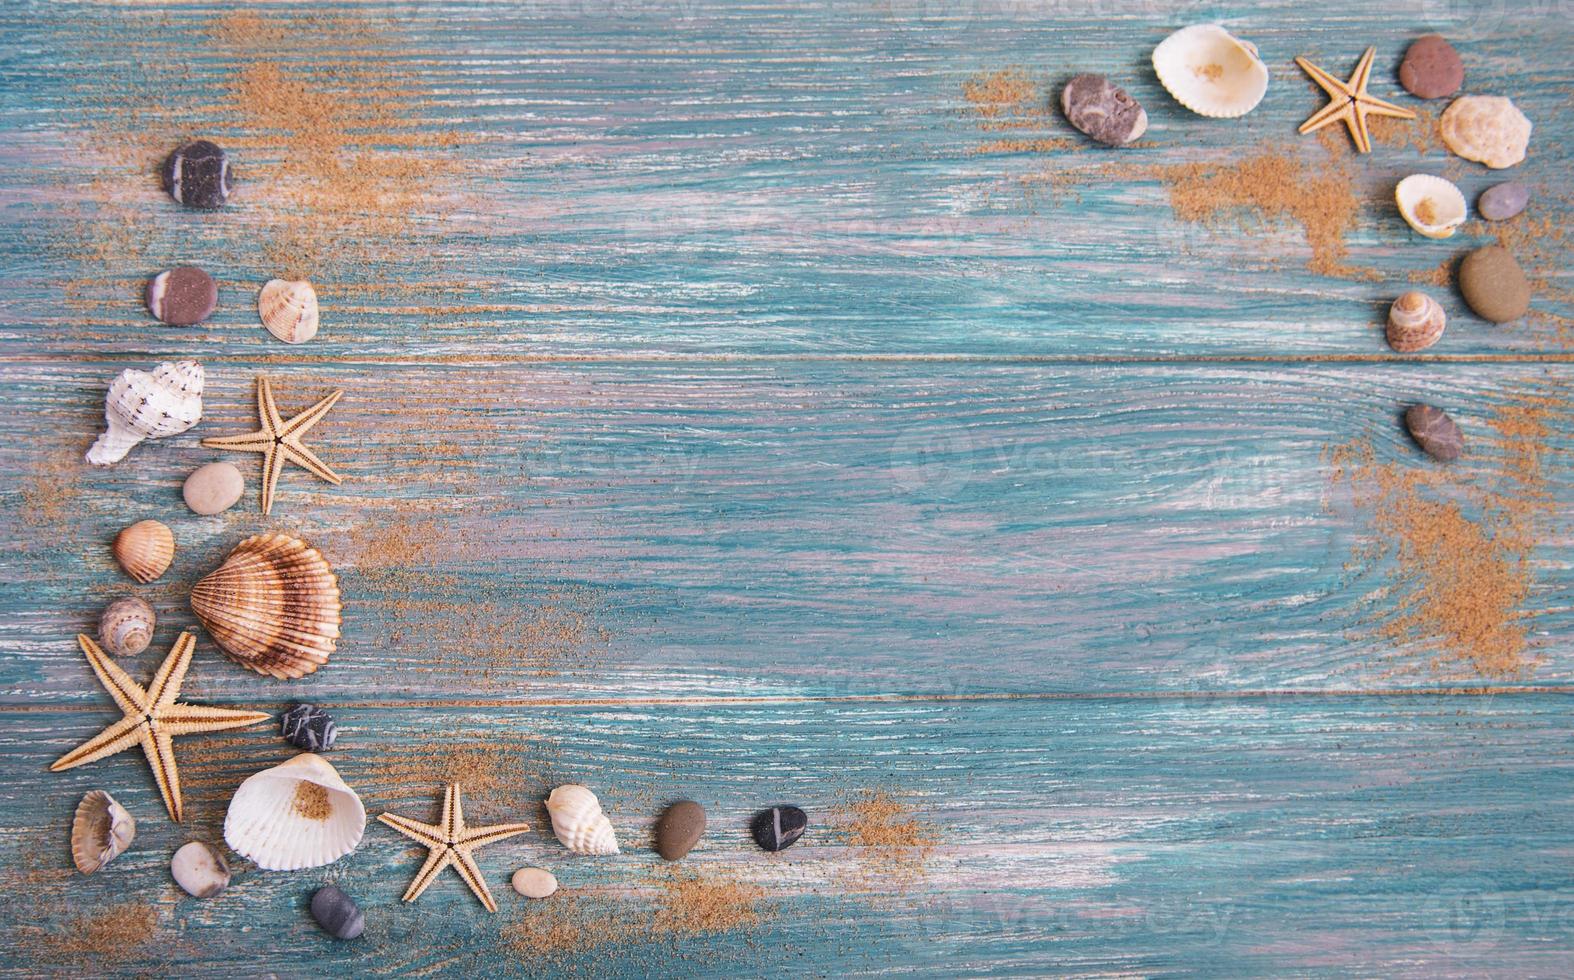 conchas marinas en una mesa de madera foto